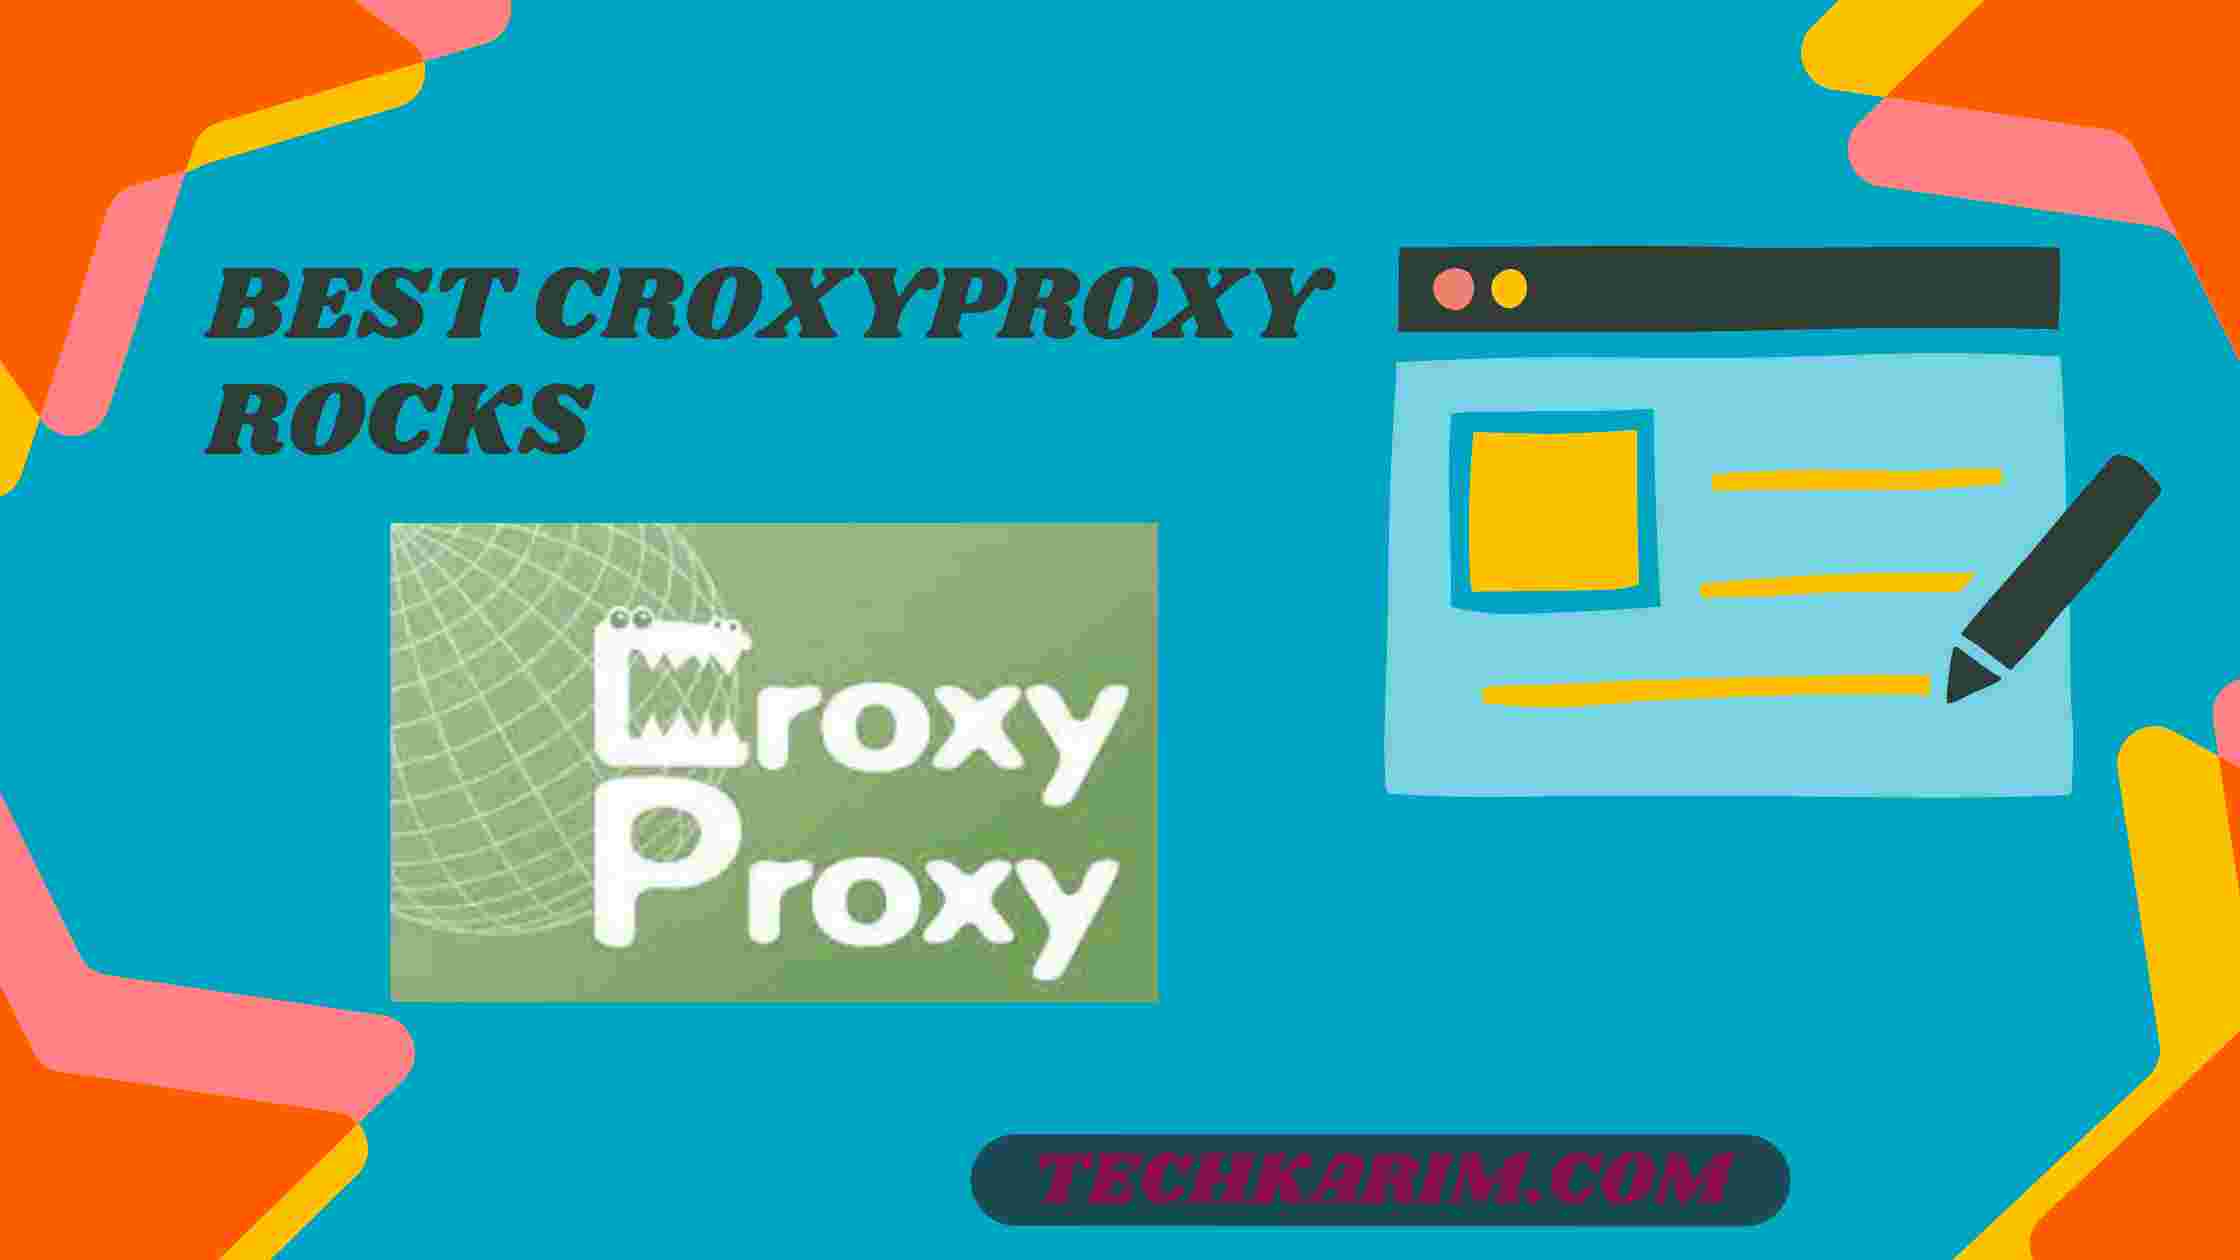 Best Croxyproxy Rocks